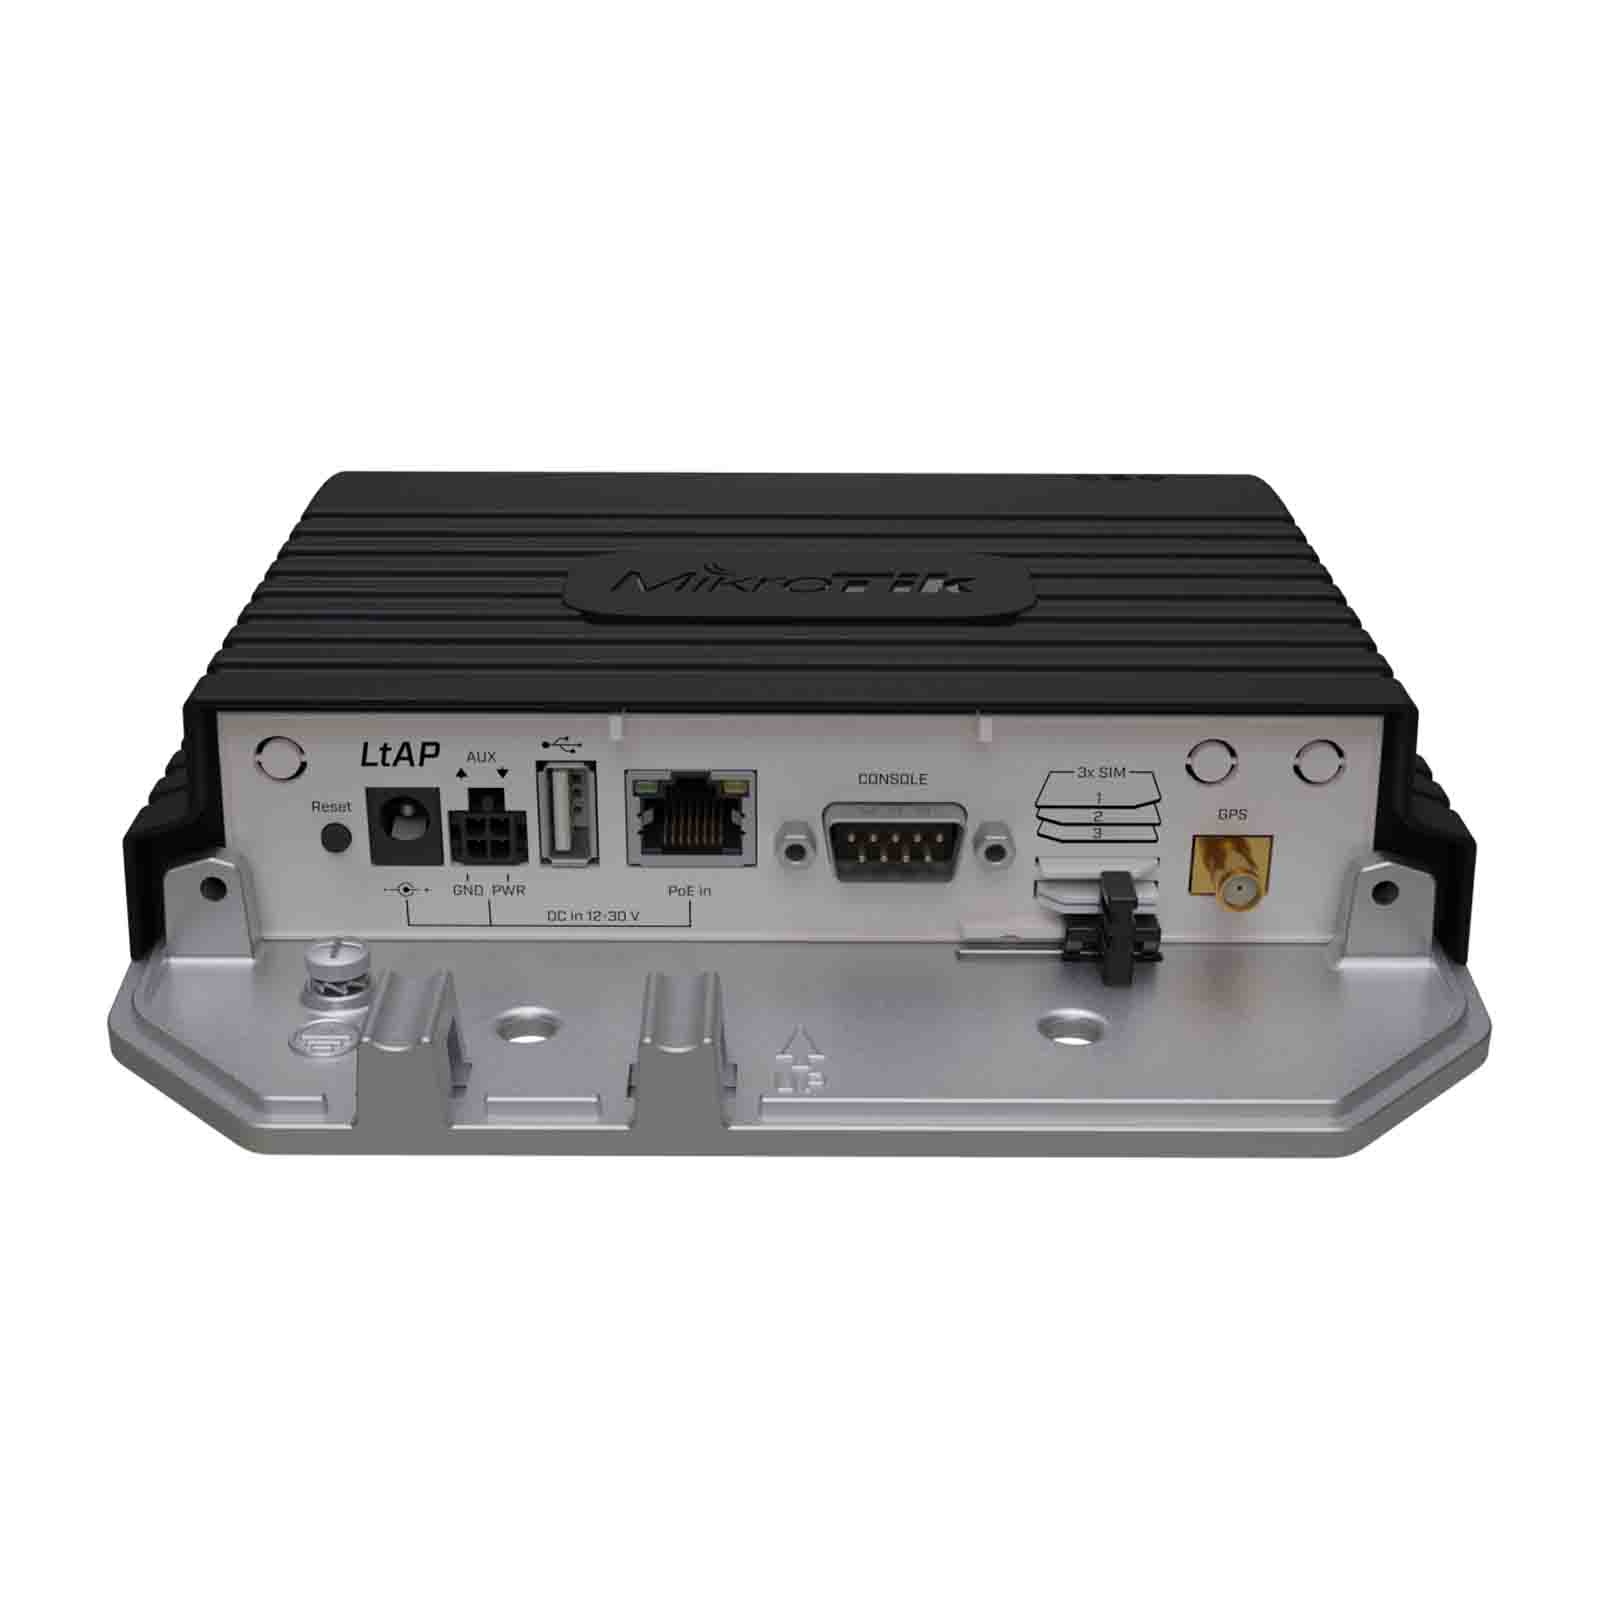 Router LtAP LTE kit RBLtAP-2HnD&R11e-LTE MikroTik